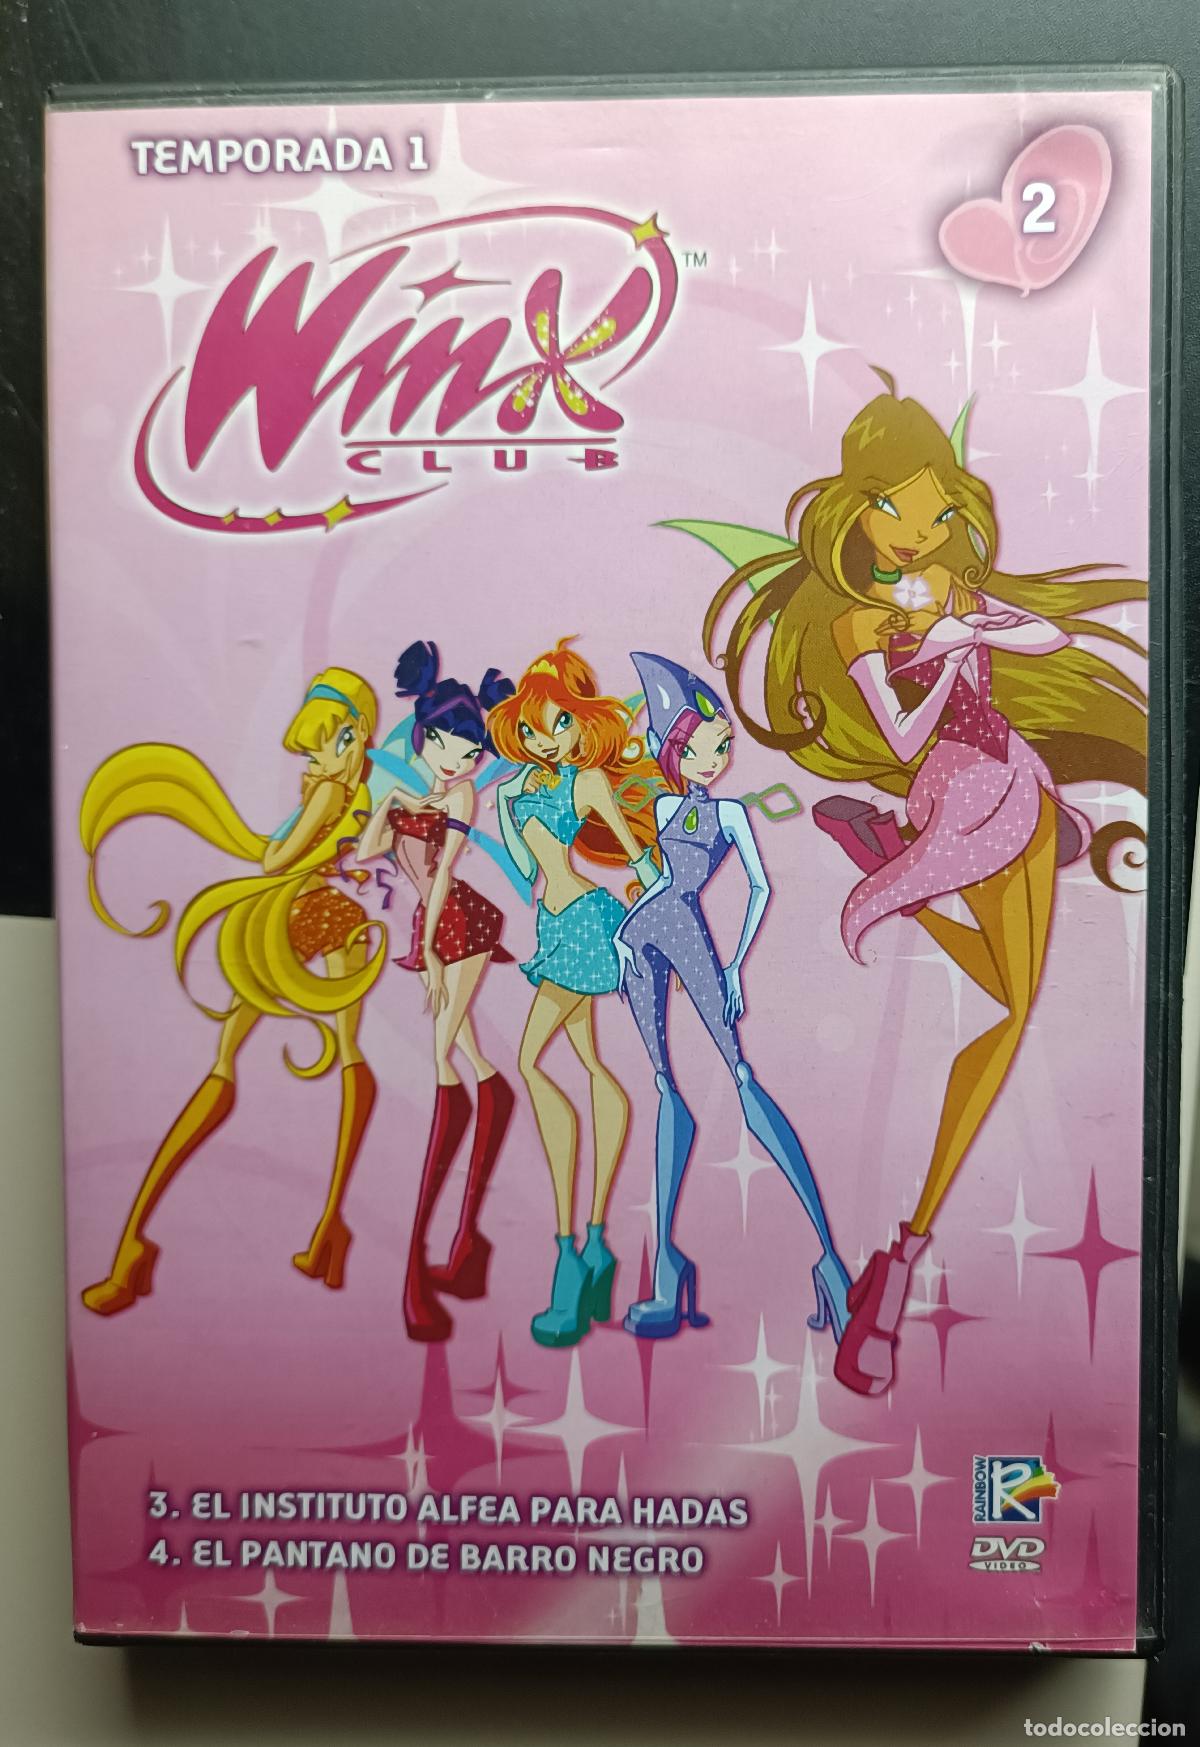 winx club temporada 1 nº 2 - Buy DVD movies on todocoleccion